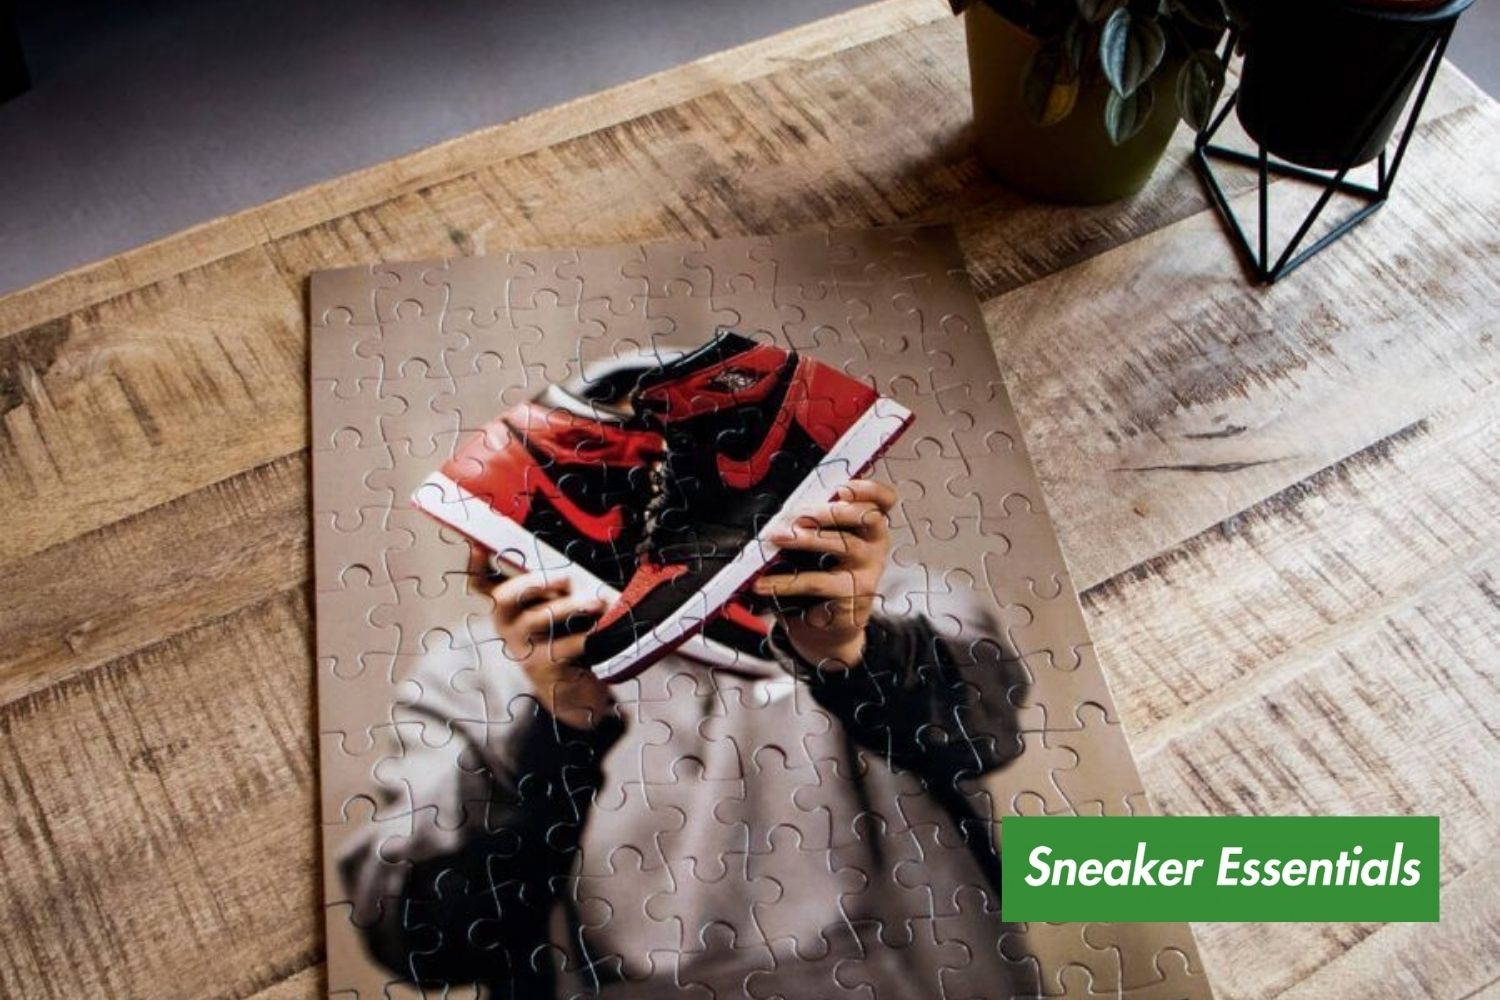 Shop de tofste items bij Sneaker Essentials